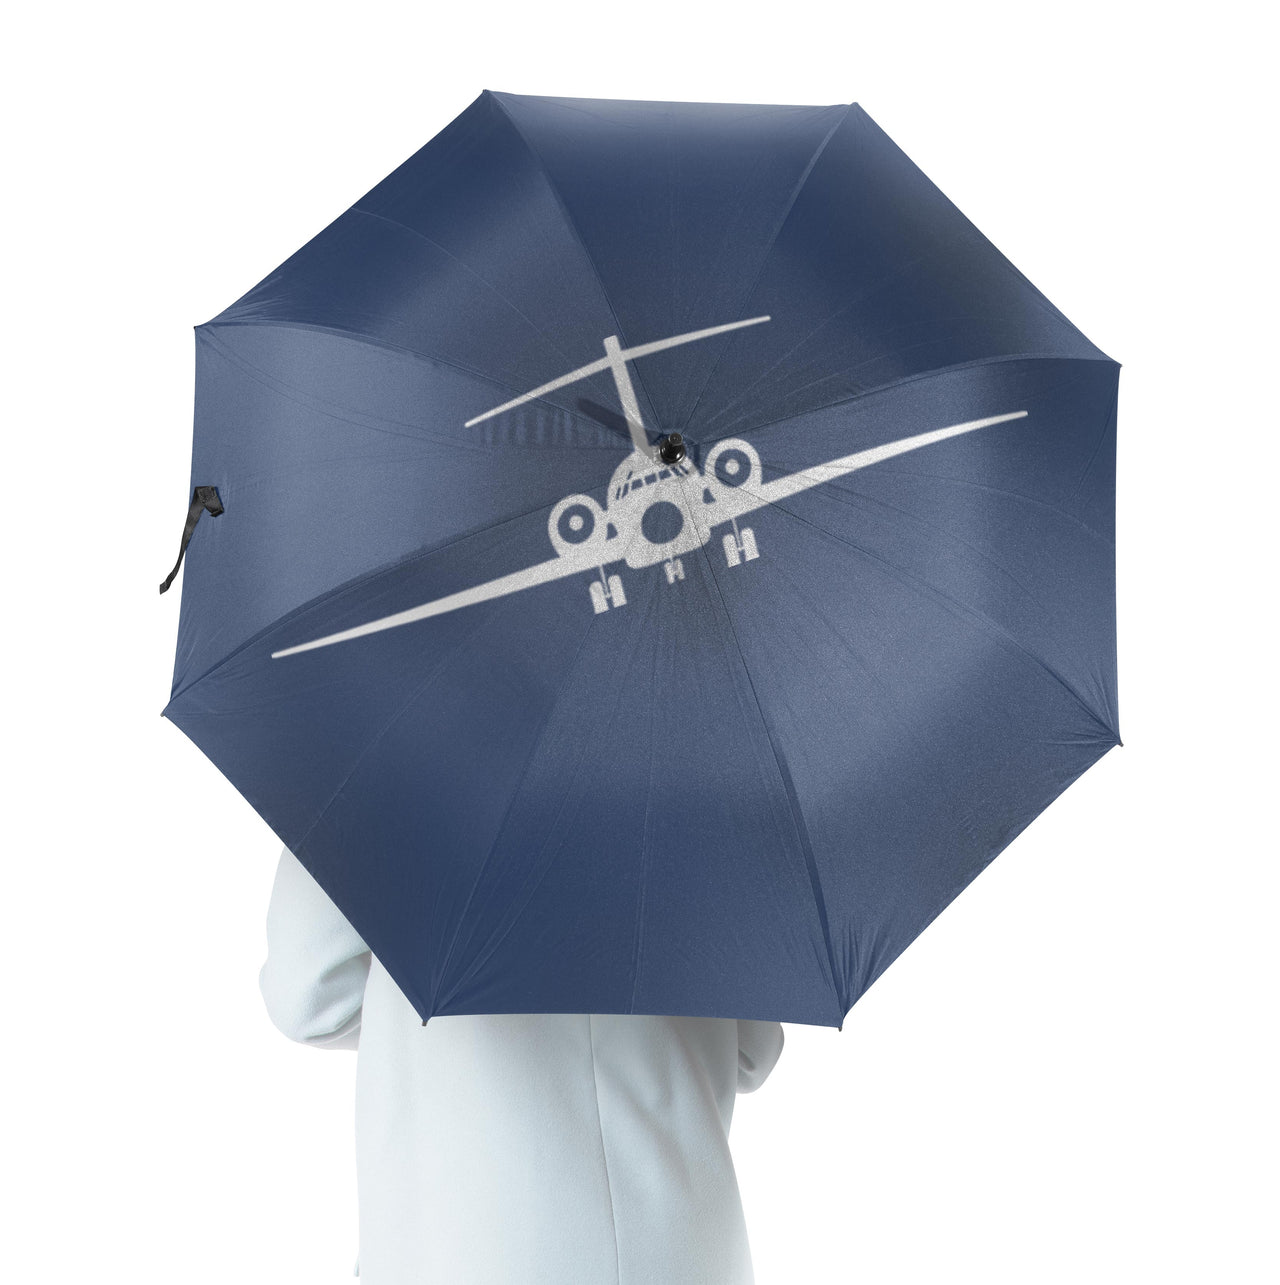 Boeing 717 Silhouette Designed Umbrella